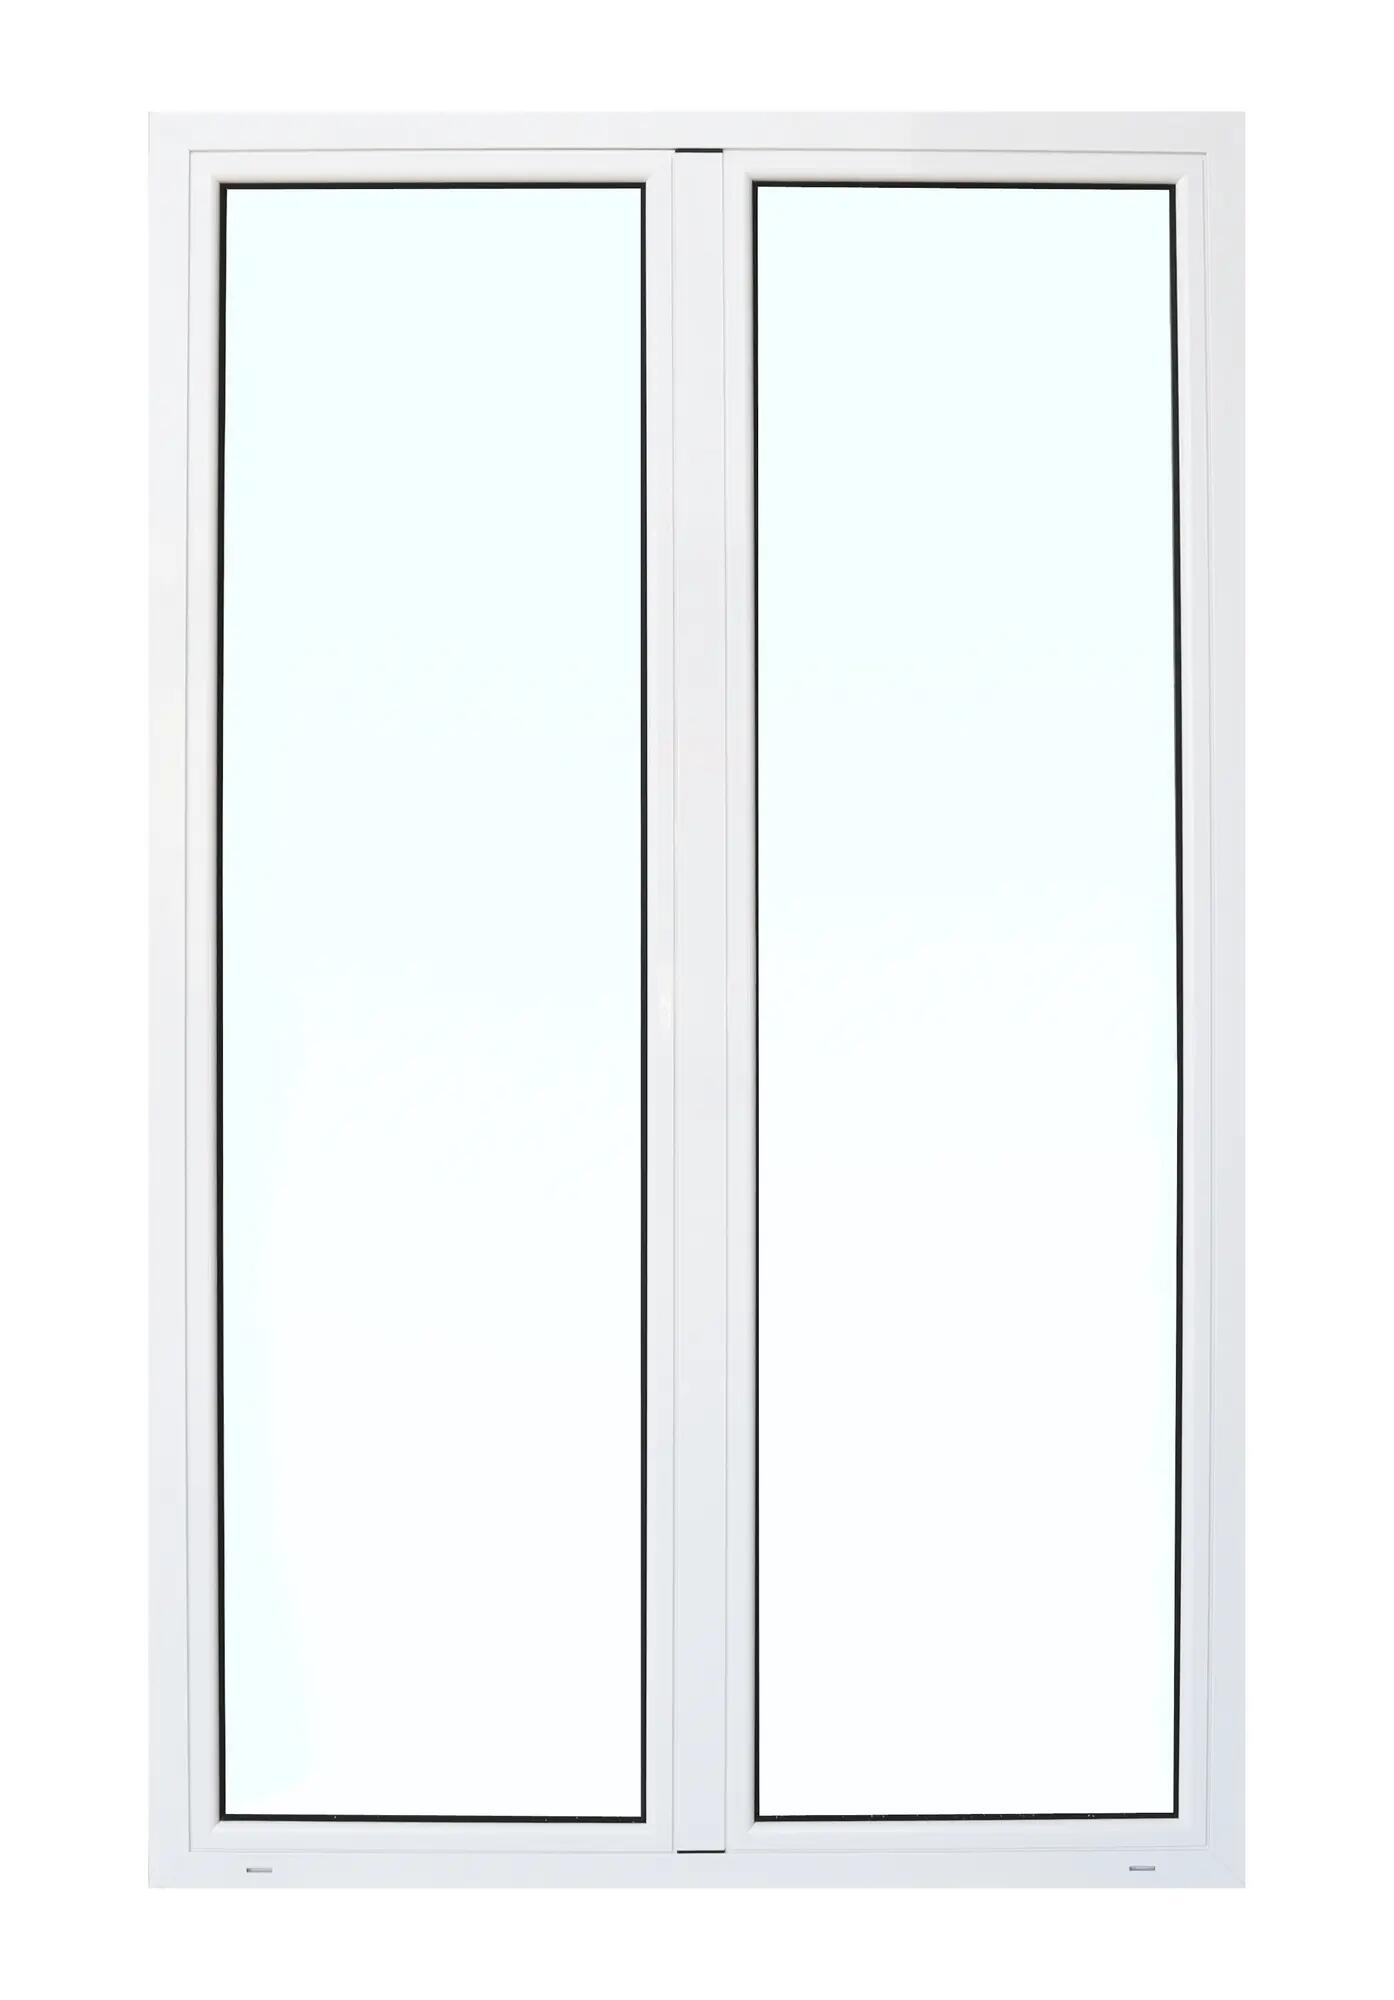 Balconera aluminio artens blanca practicable 160x210cm